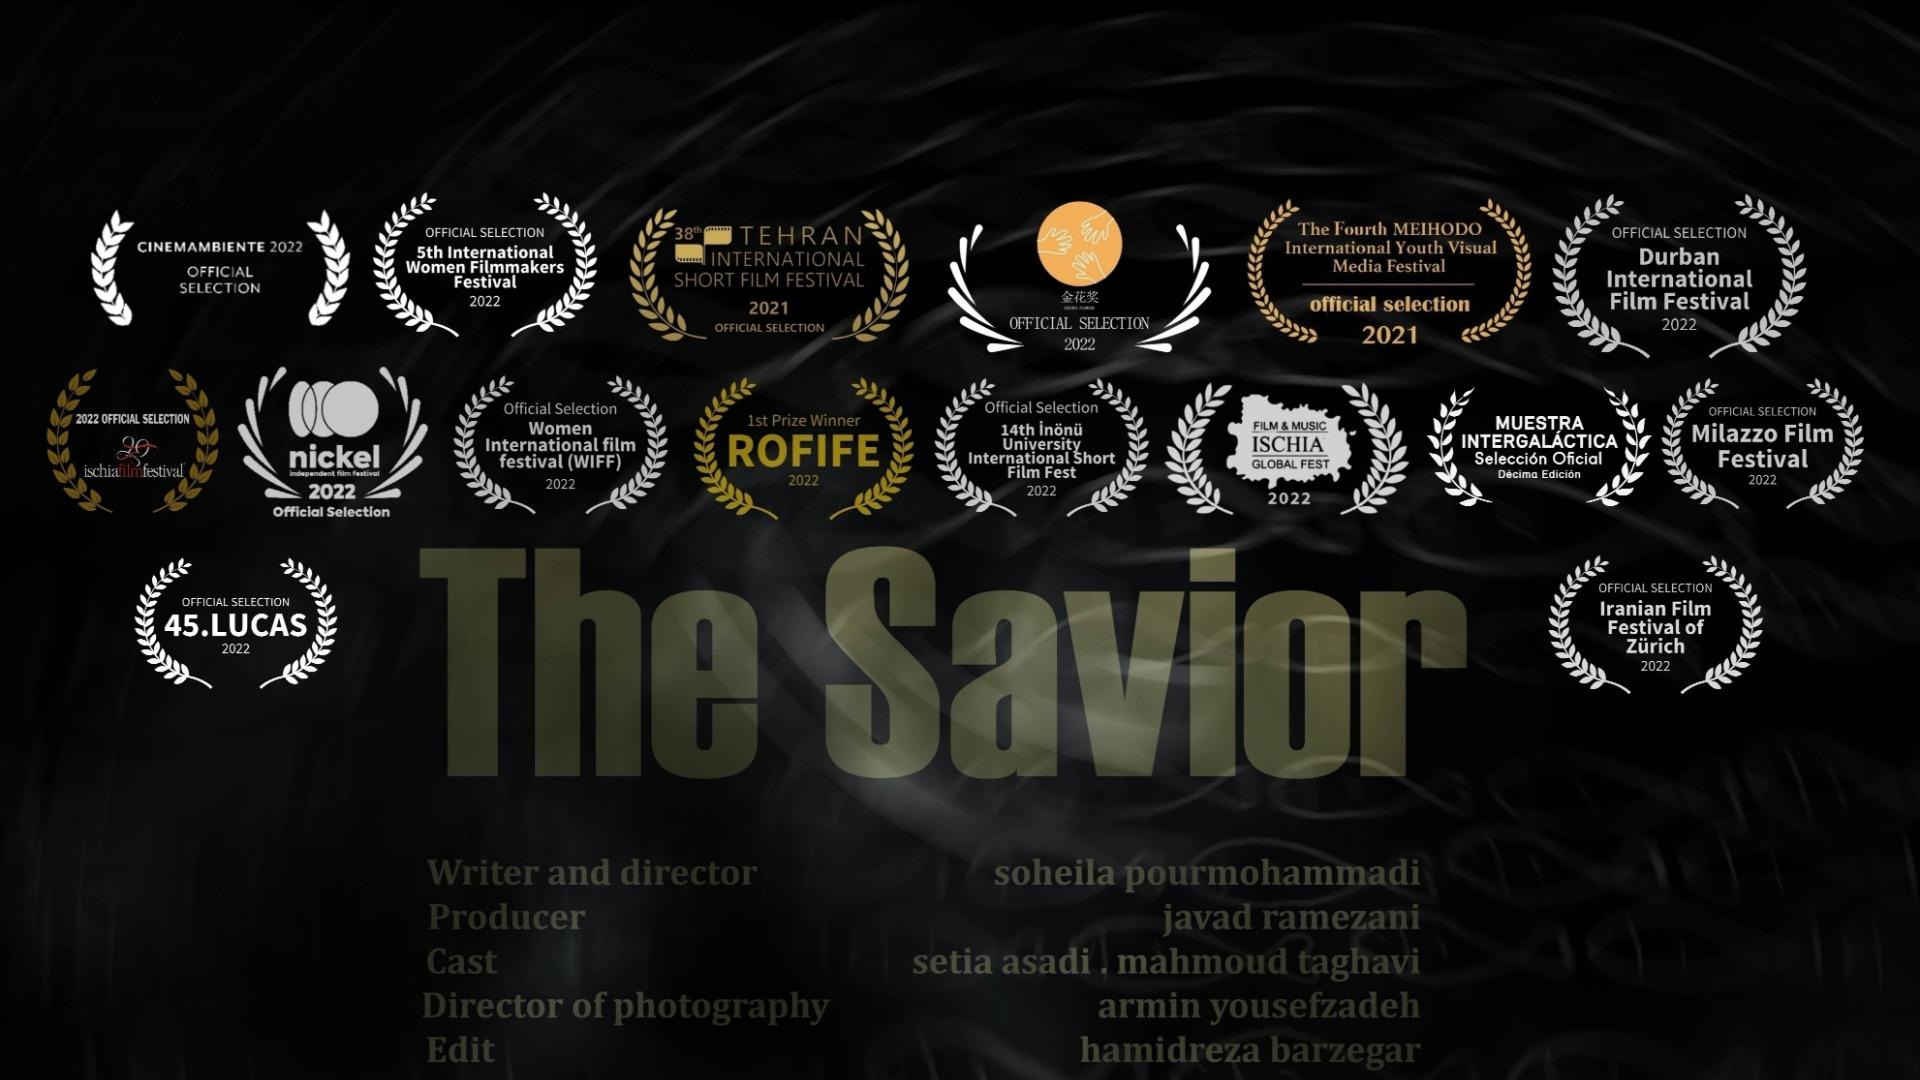 The savior